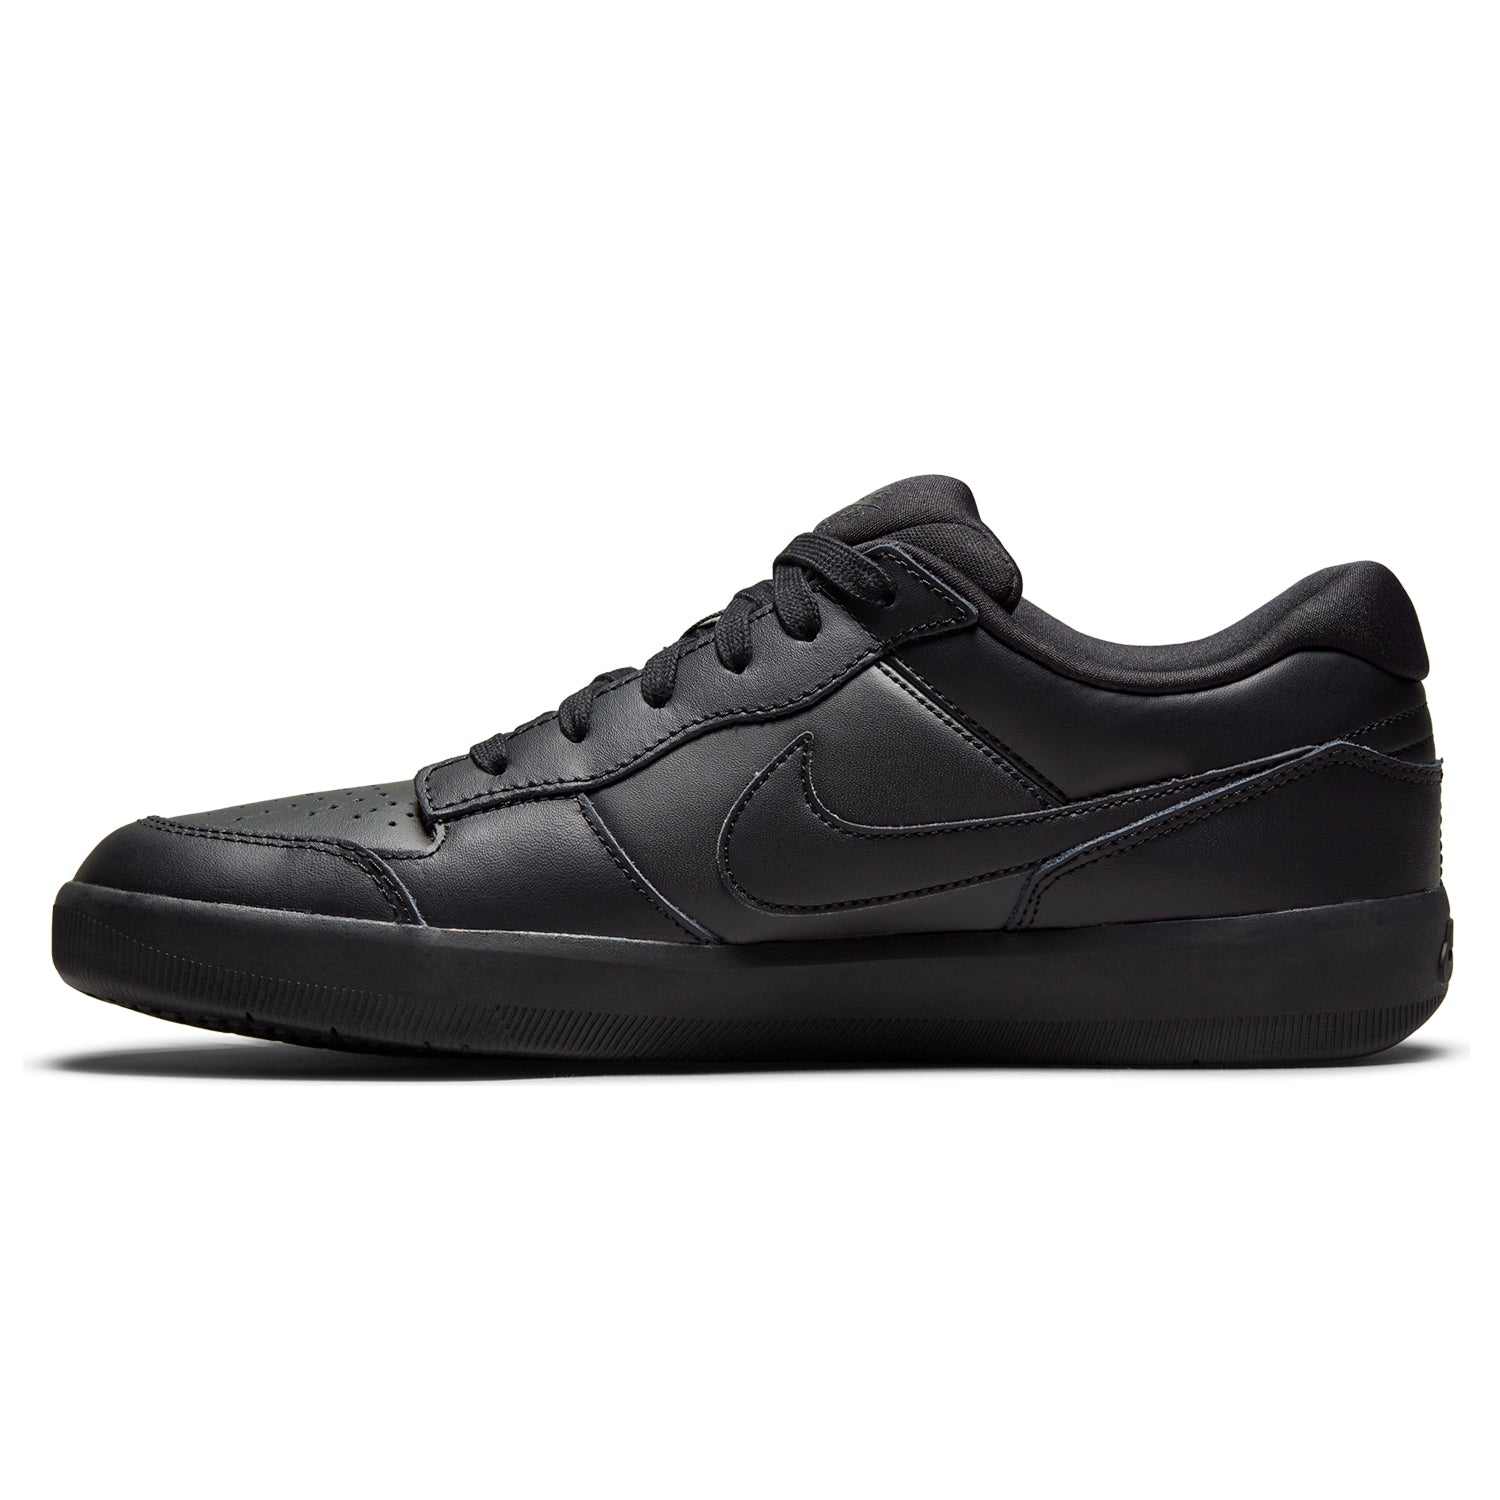 Nike SB Force Premium Leather Black/Black Skateshop